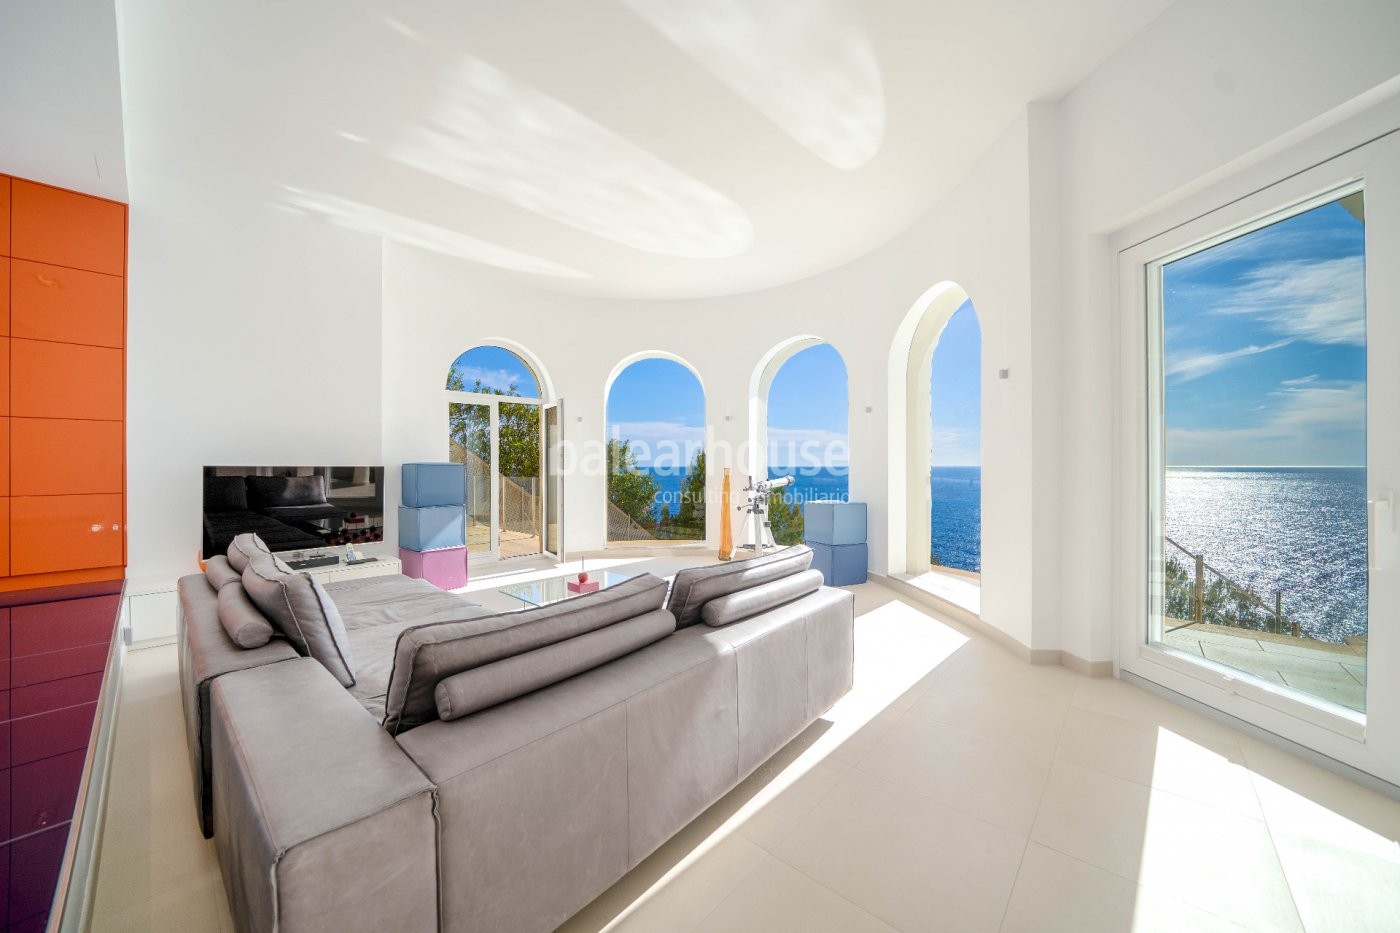 Villa in erster Meereslinie in Port Adriano als spektakulärer Aussichtspunkt aufs Mittelmeer